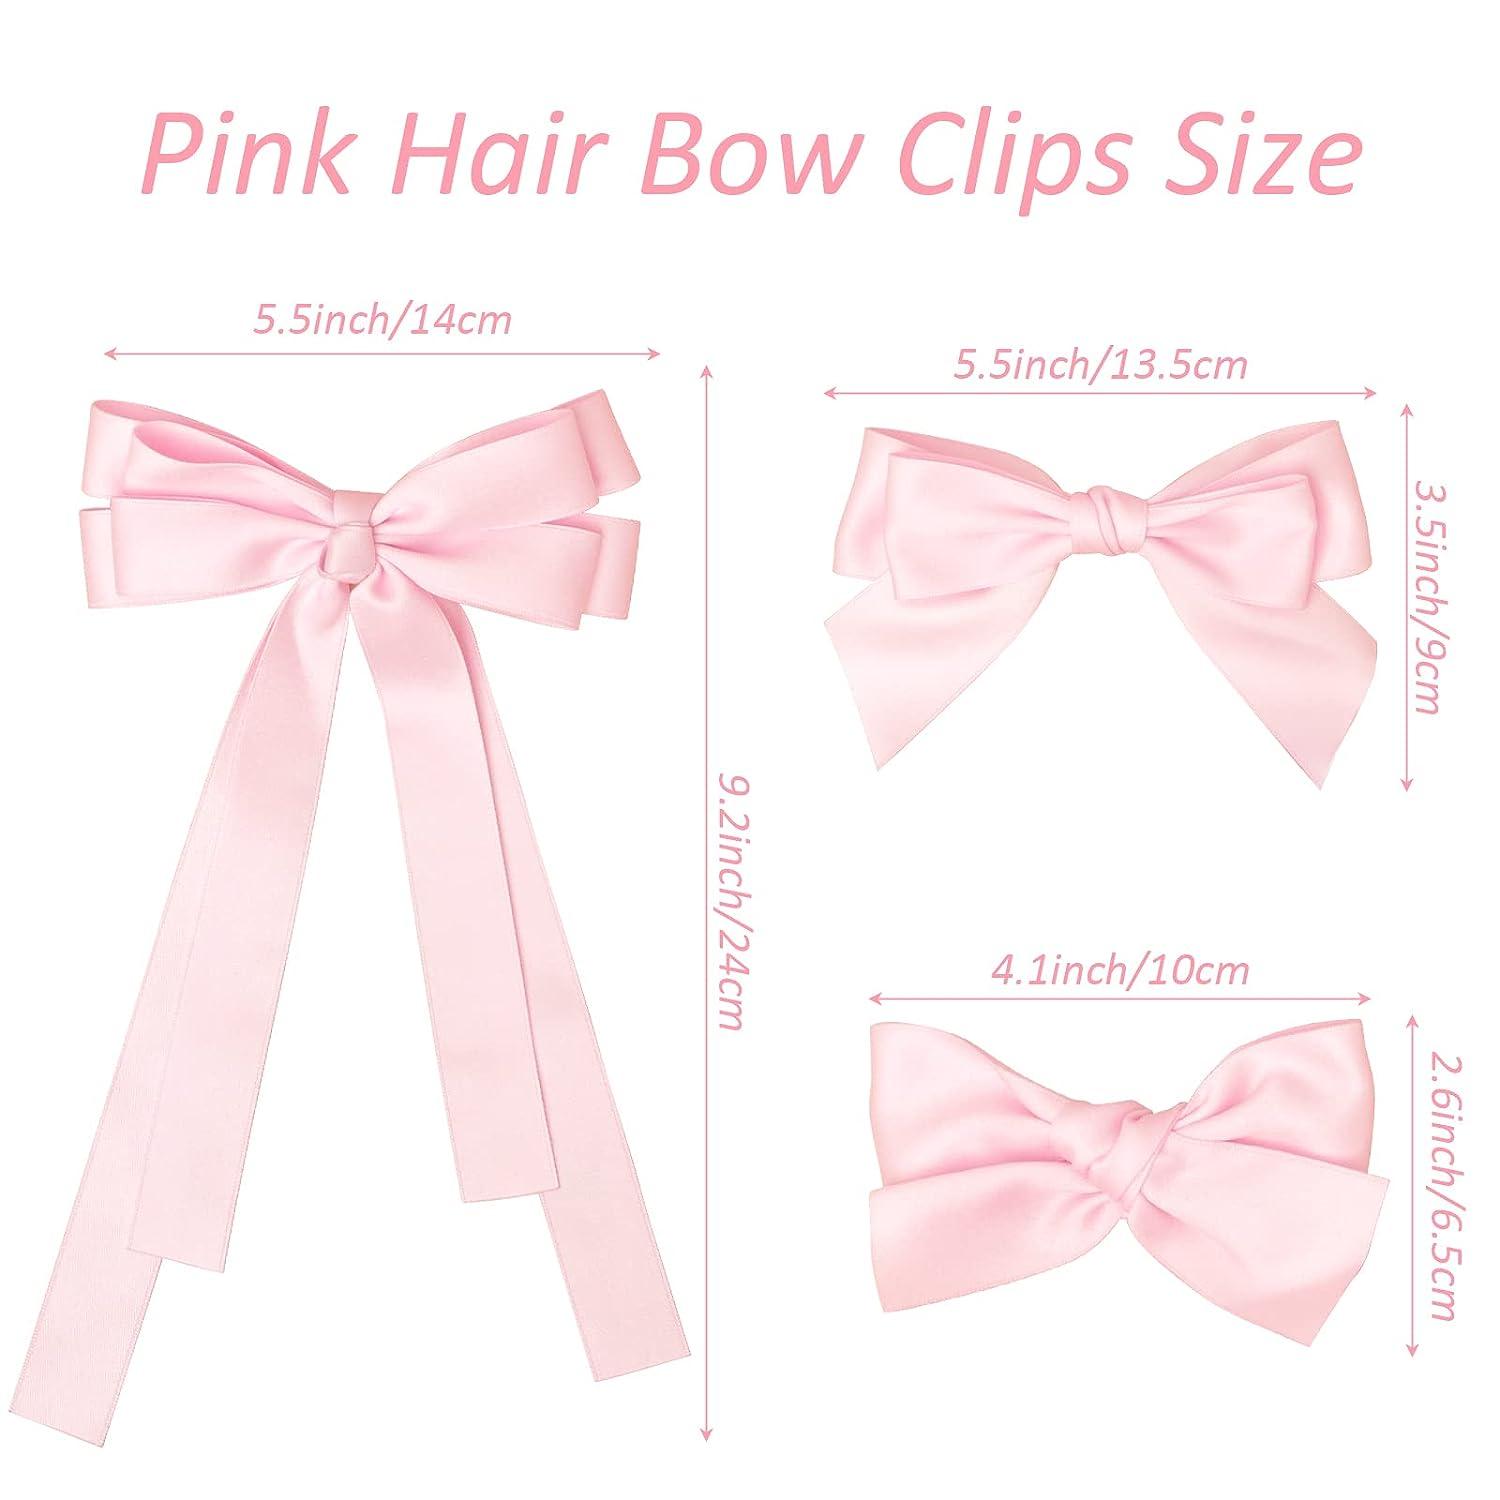  Bolonar Pink Hair Bows for Women Girls 3Pcs, Cute